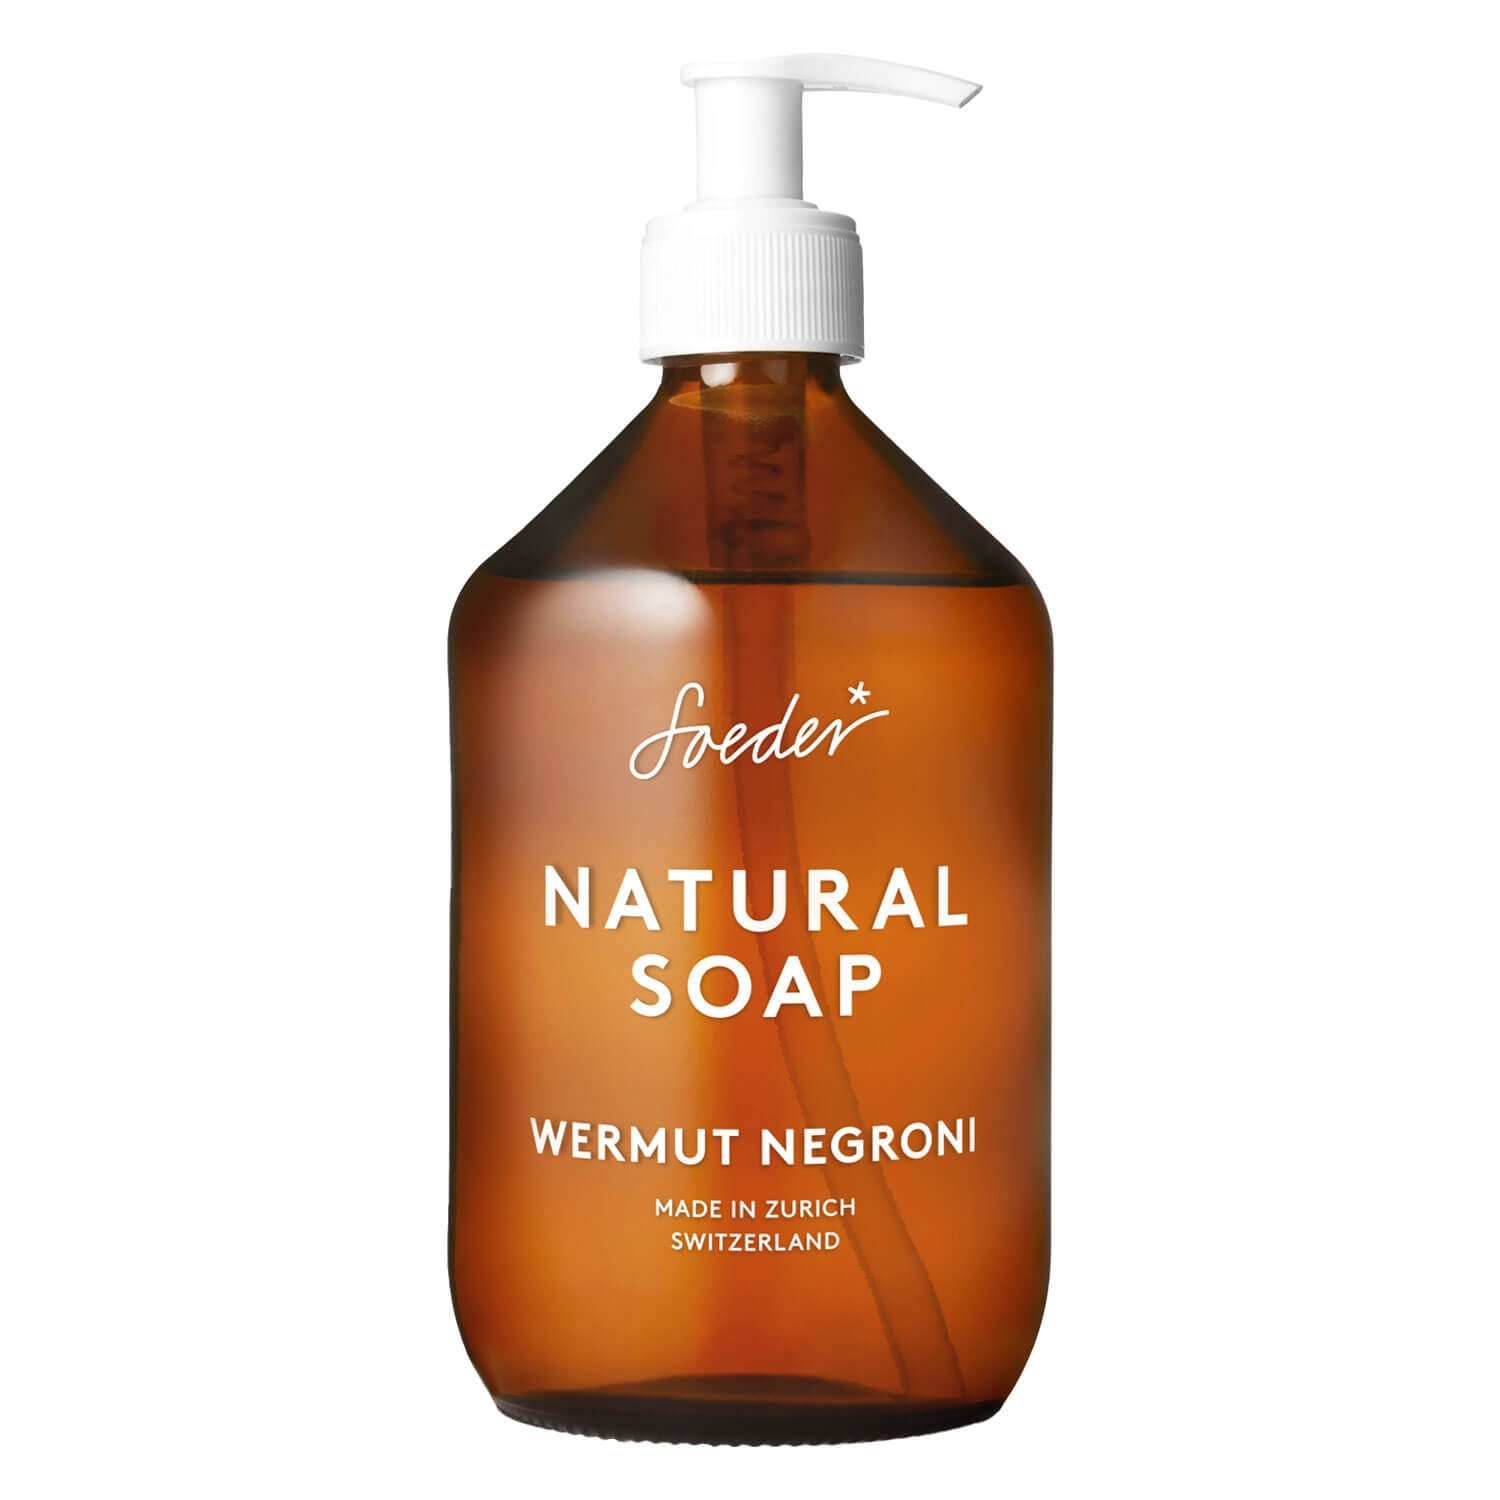 Produktbild von Soeder - Natural Soap Wermut Negroni